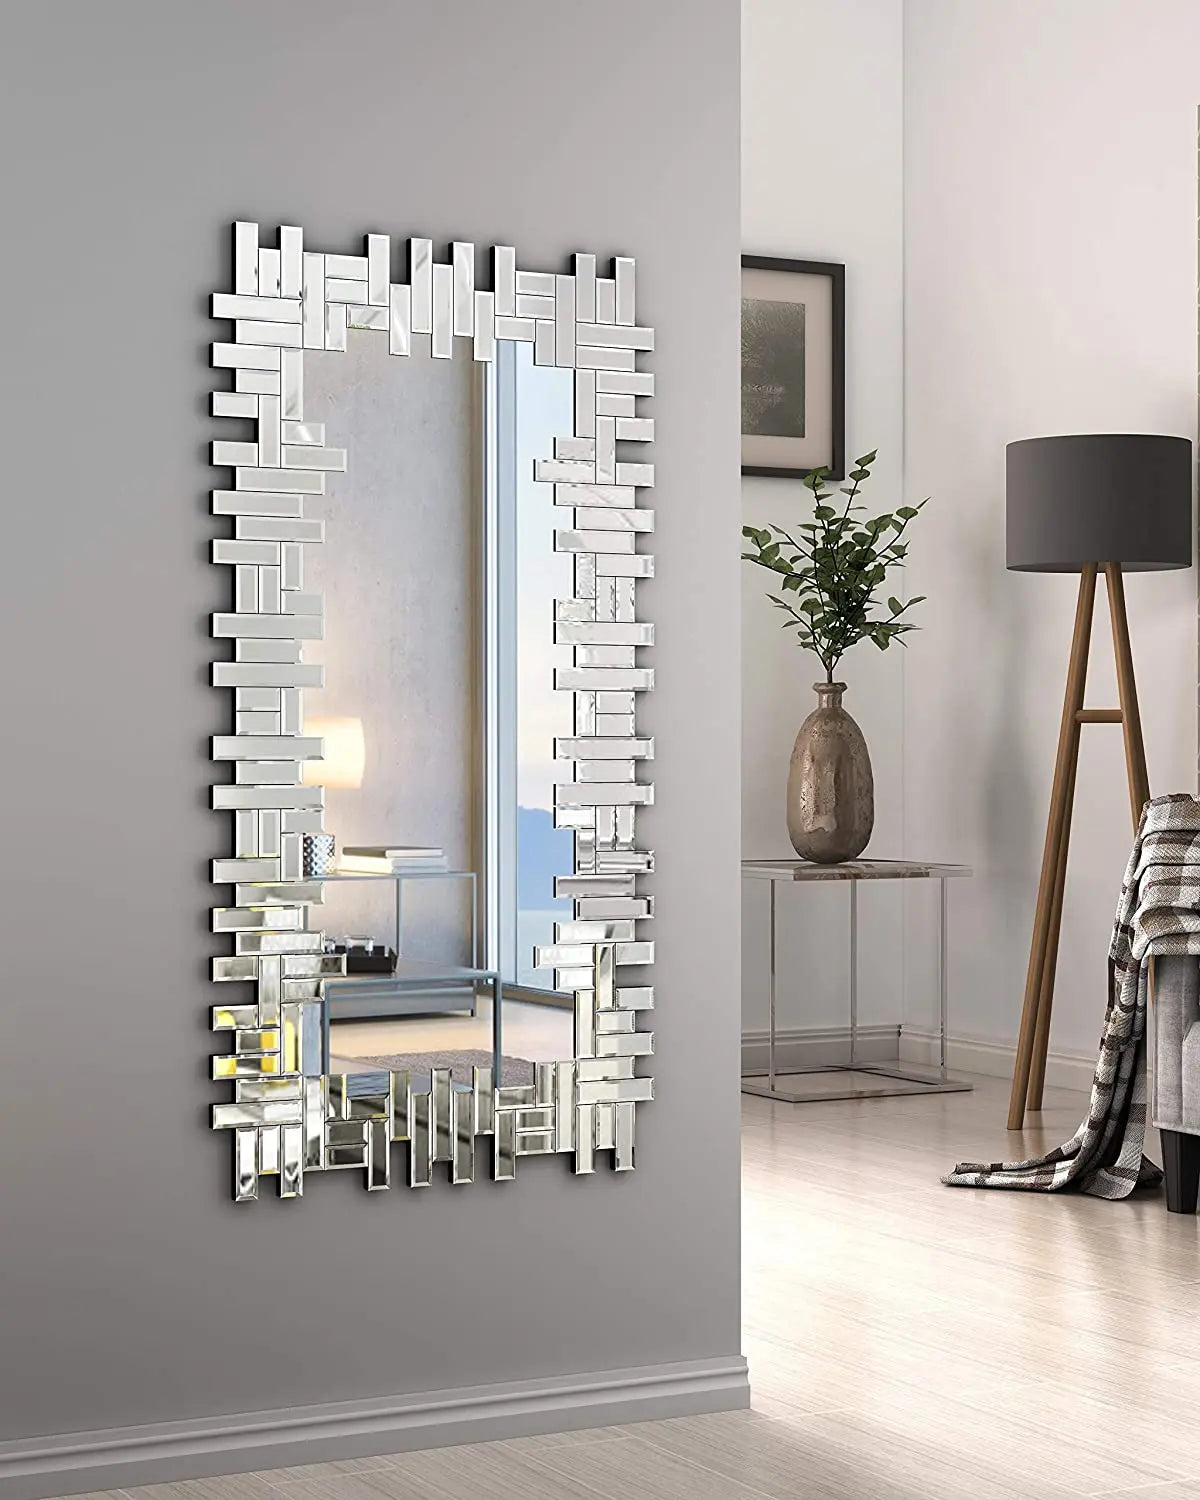 Rectangular Modern Wall Mirror VDR-660 Venetian Design